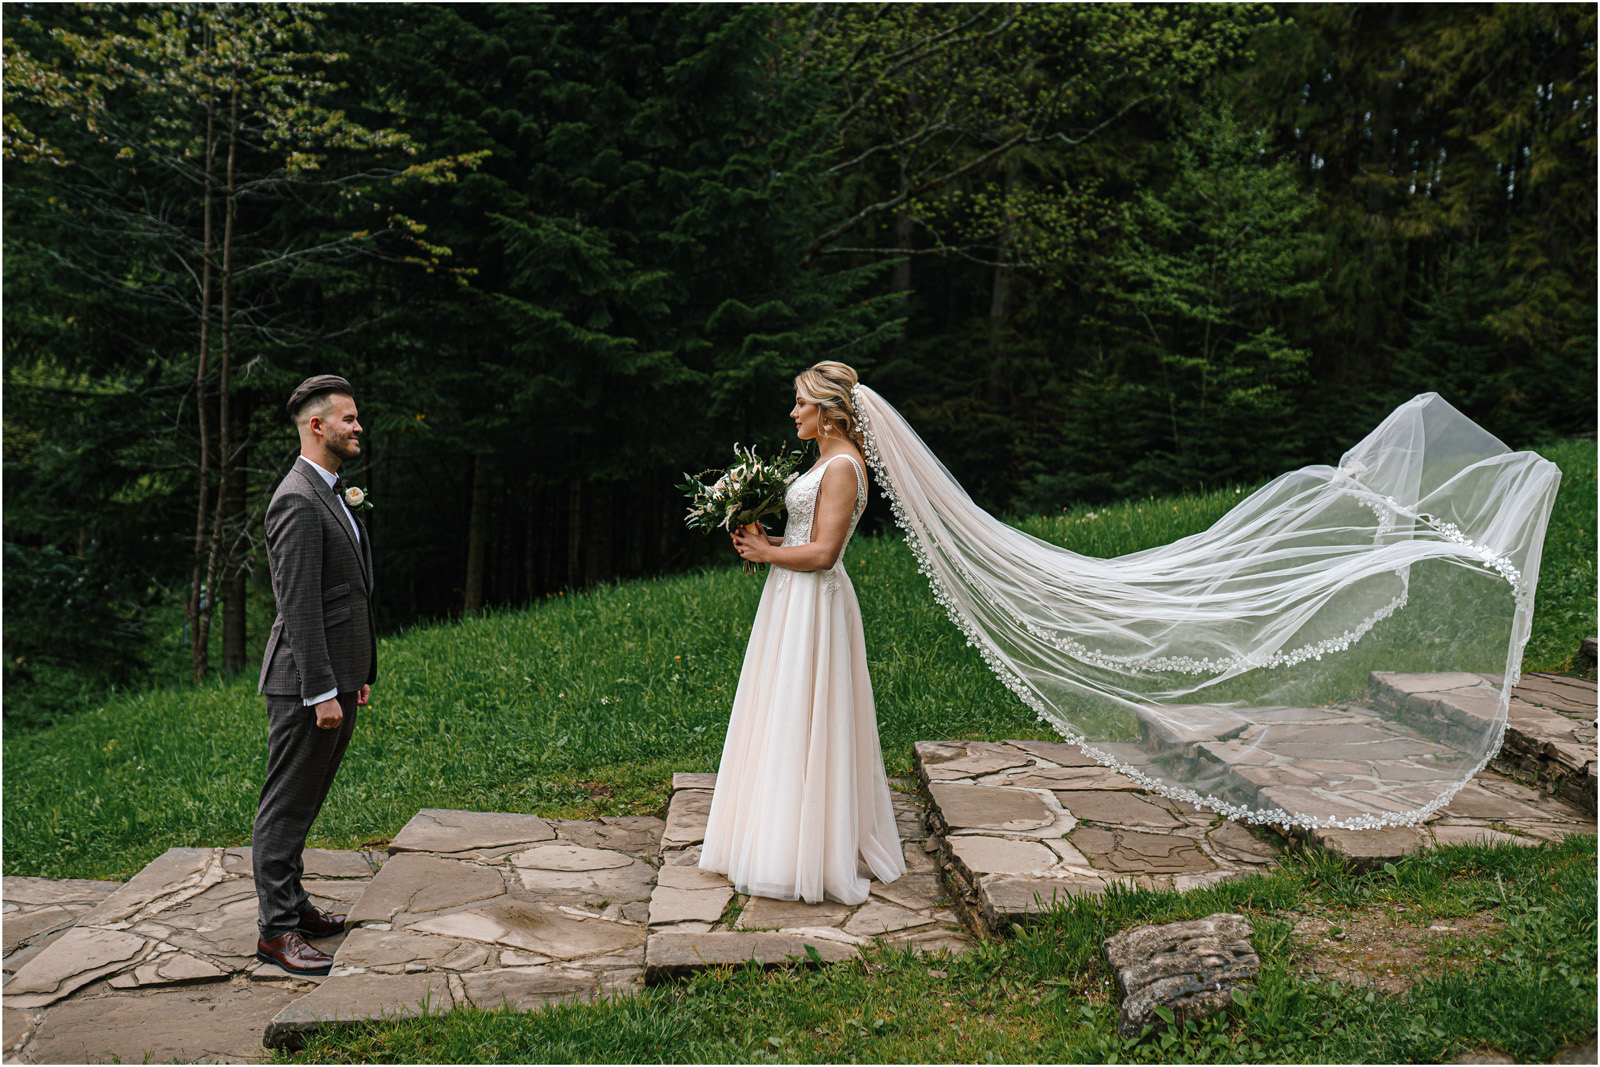 Amanda & Błażej | ślub i sesja w górach 46